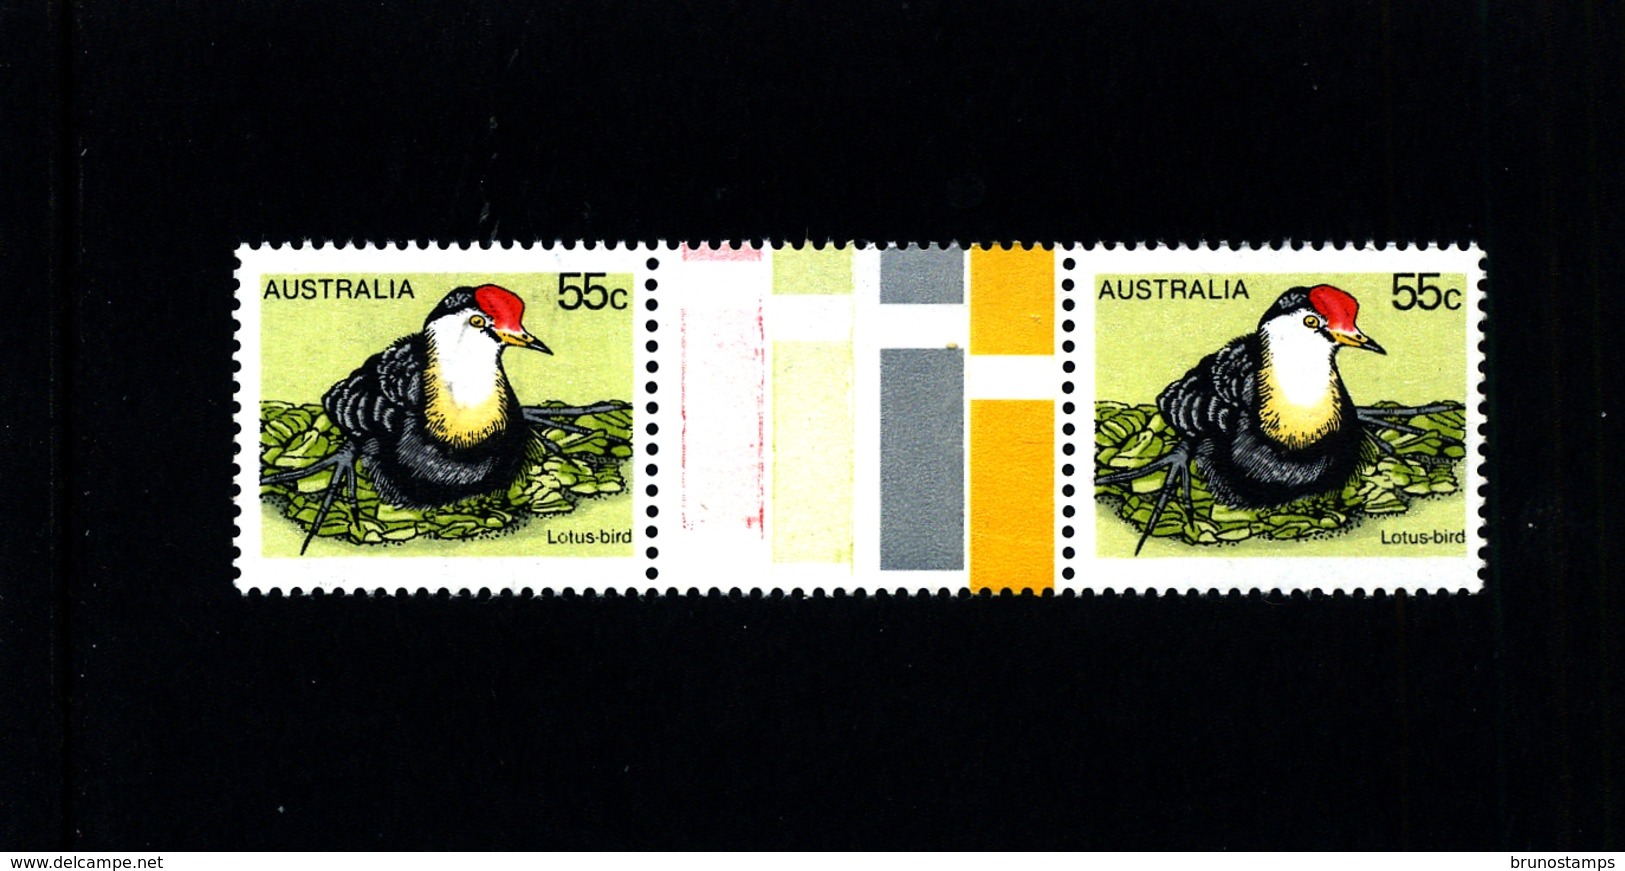 AUSTRALIA - 1978  55c  LOTUS-BIRD  UNFOLDED  GUTTER PAIR   MINT NH - Nuovi